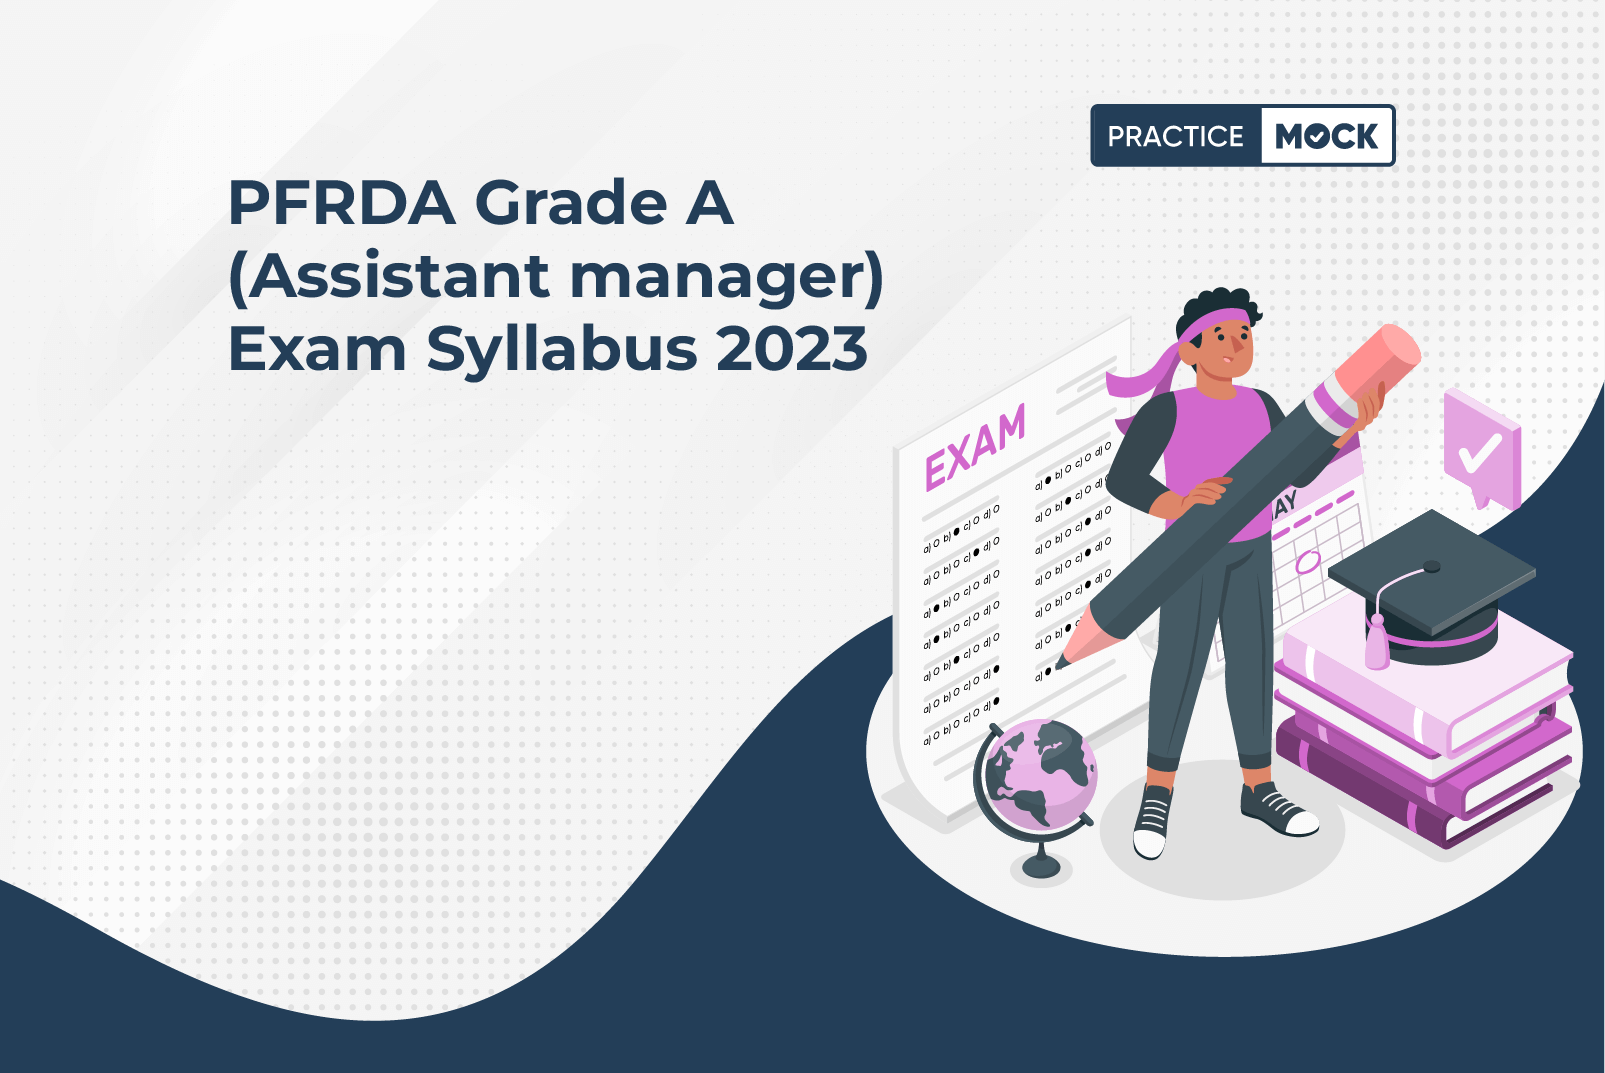 PFRDA Grade A 2023 Exam Syllabus